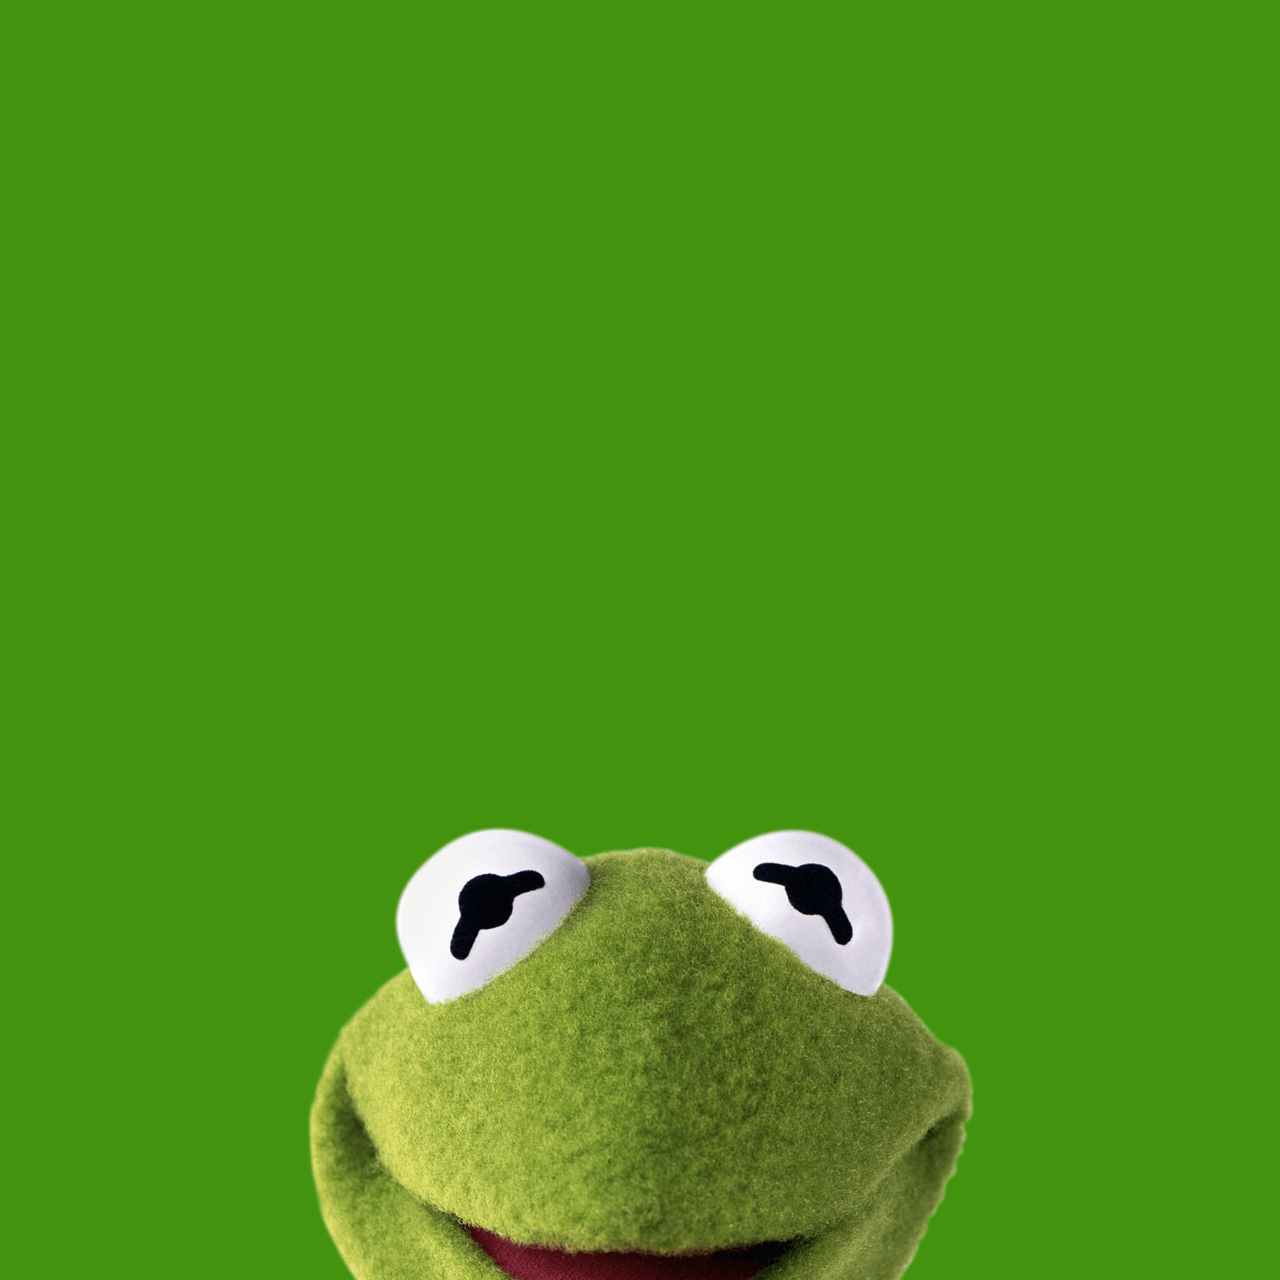 Tận hưởng sự đáng yêu của chú ếch xanh lá cây Kermit với những hình nền tuyệt đẹp. Chọn cho mình một hình nền yêu thích và làm mới màn hình điện thoại hoặc máy tính của bạn ngay bây giờ.